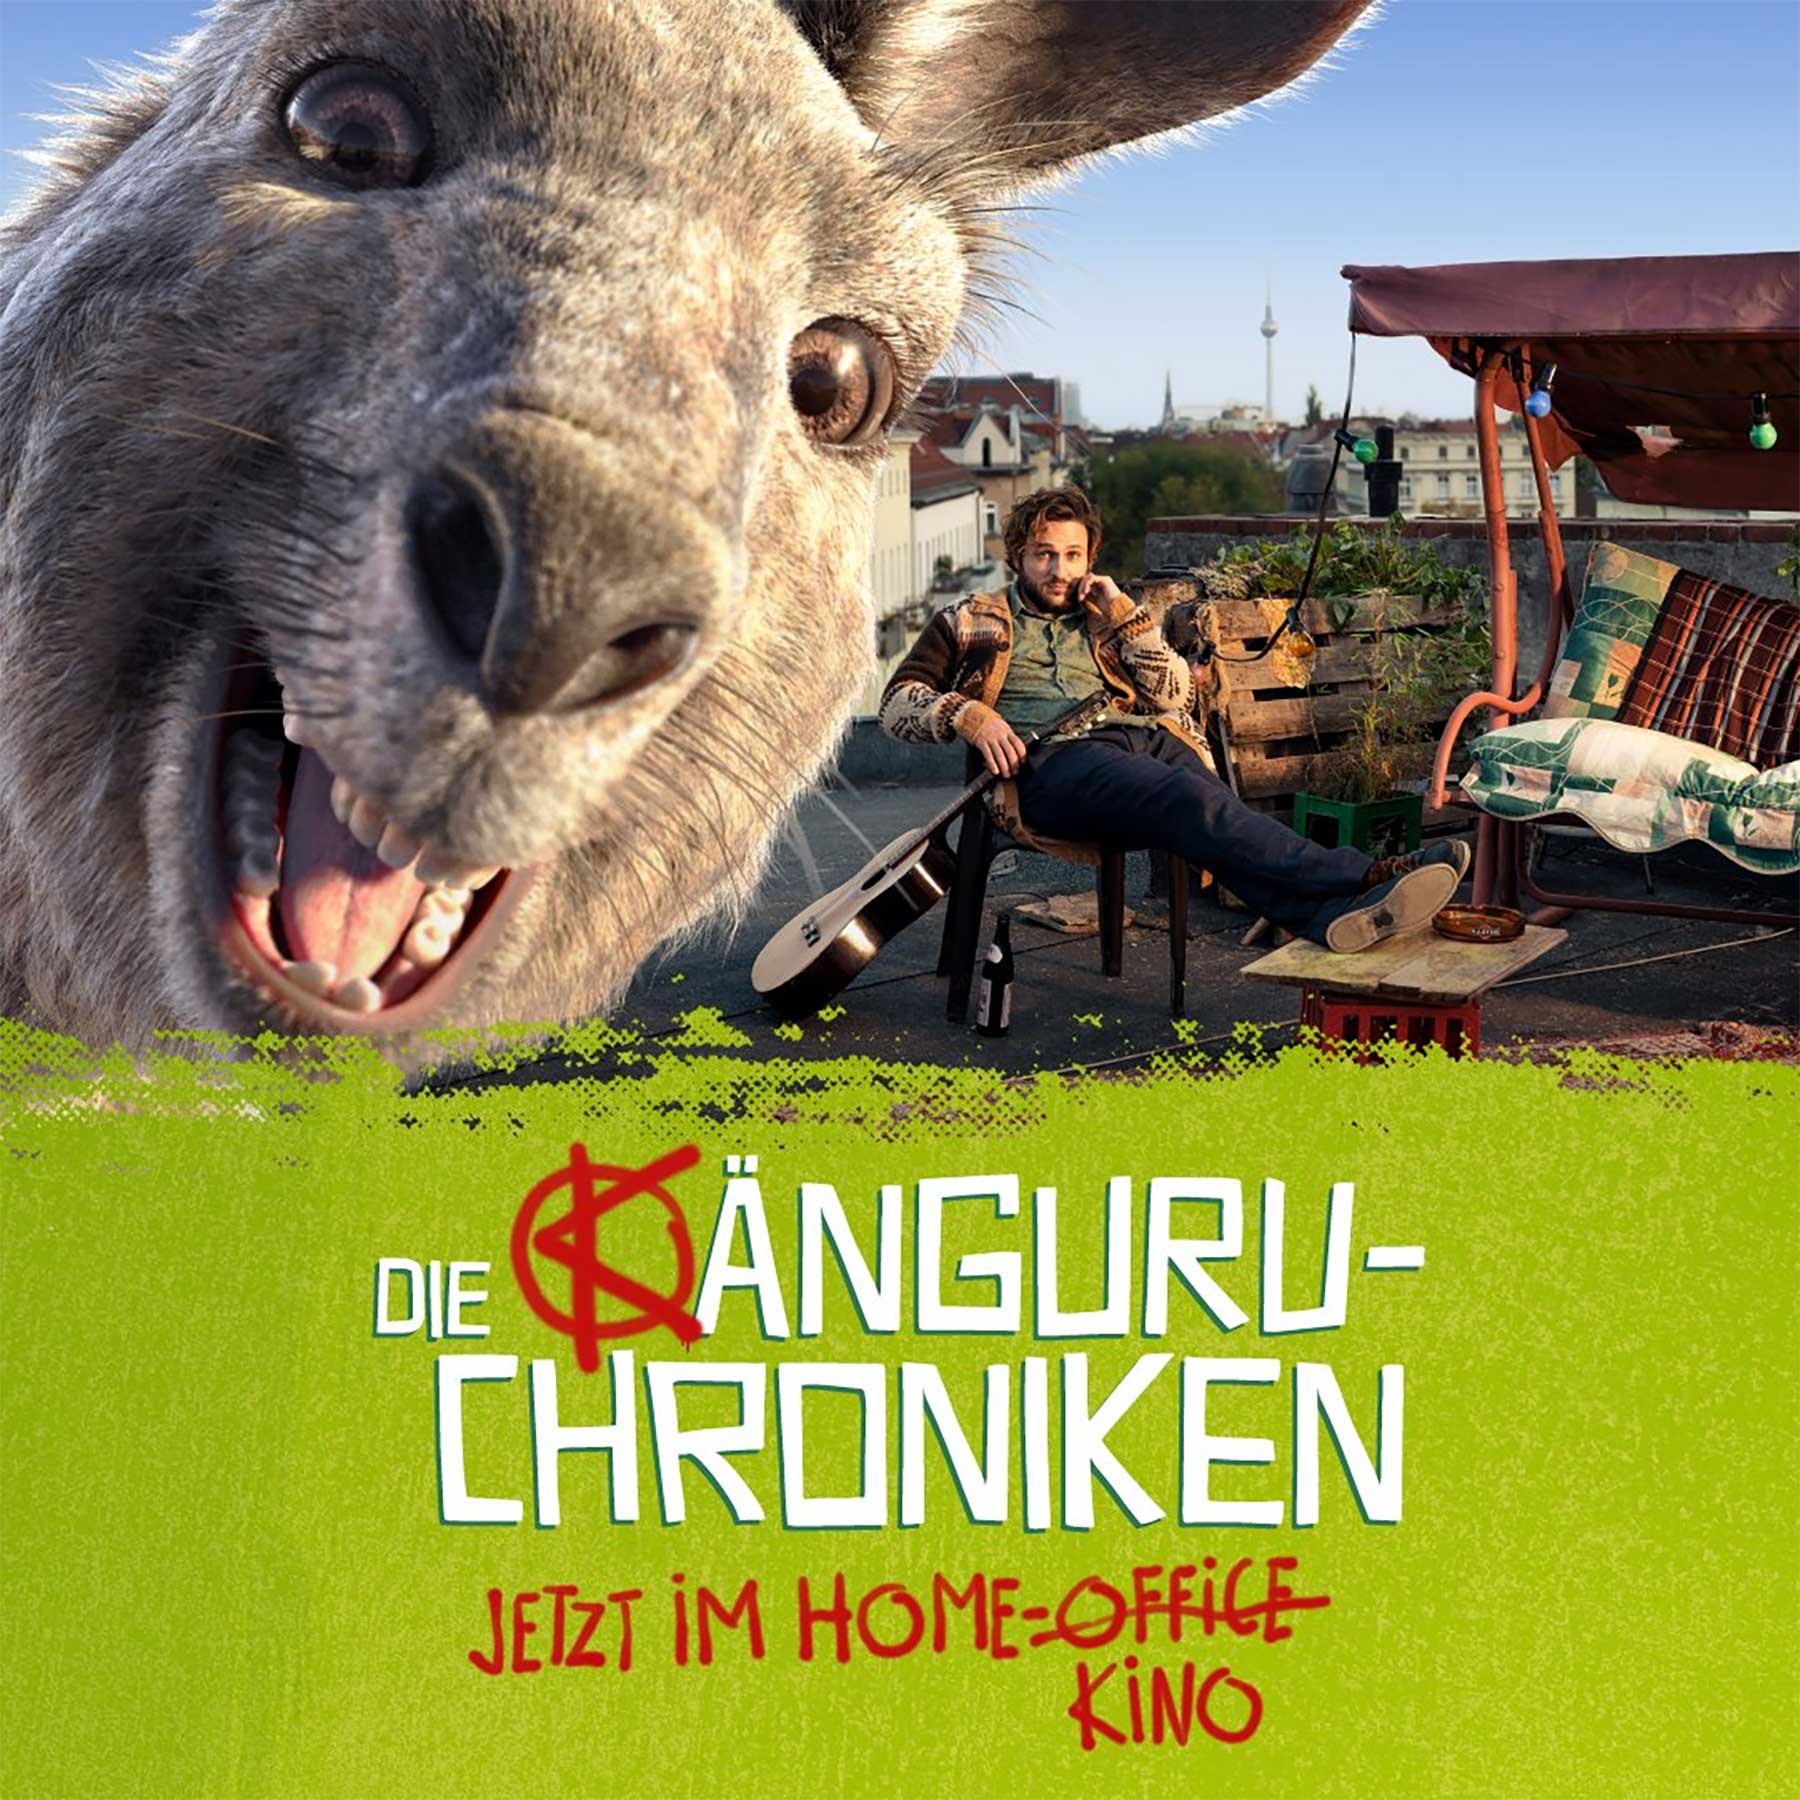 Die Känguru-Chroniken: Film ab morgen als Download und Stream erhältlich die-kaenguru-chroniken-film-home-kino-version-release_01 